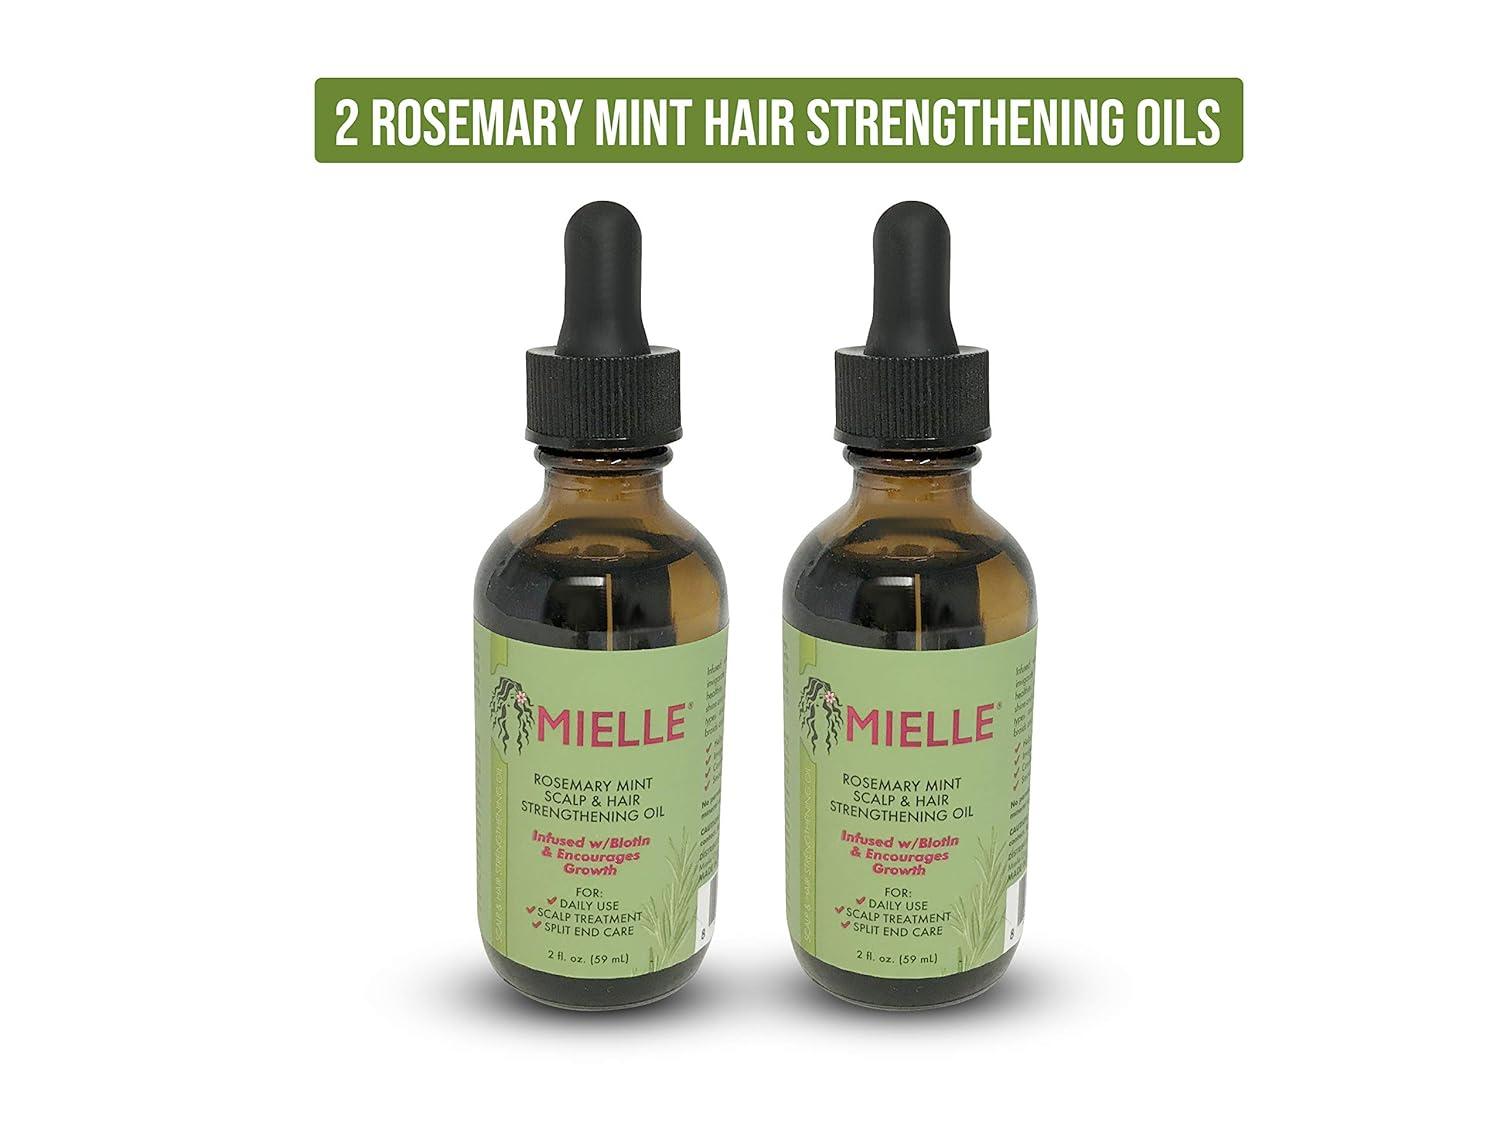 Mielle Organics Rosemary Mint Growth Oil 2 oz, Strengthening Hair